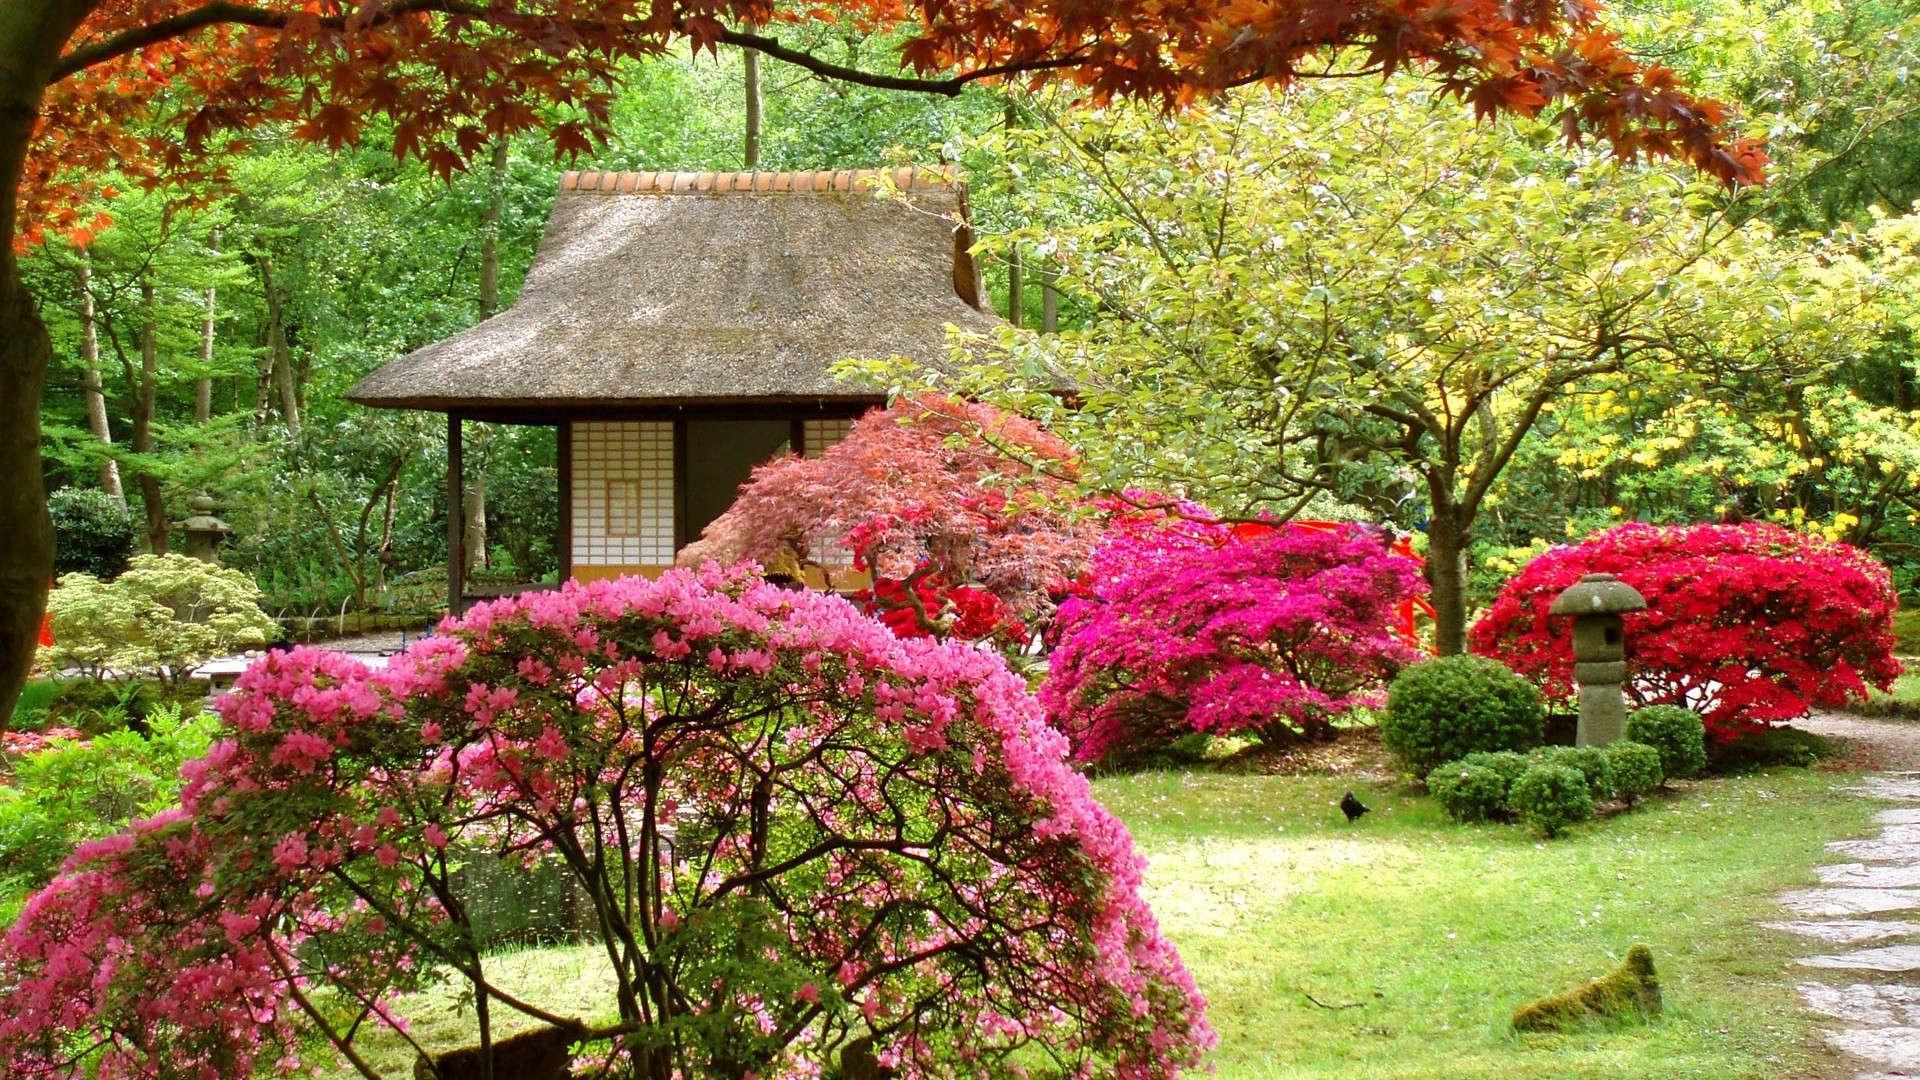 Spring Japanese Garden for 1920 x 1080 HDTV 1080p resolution